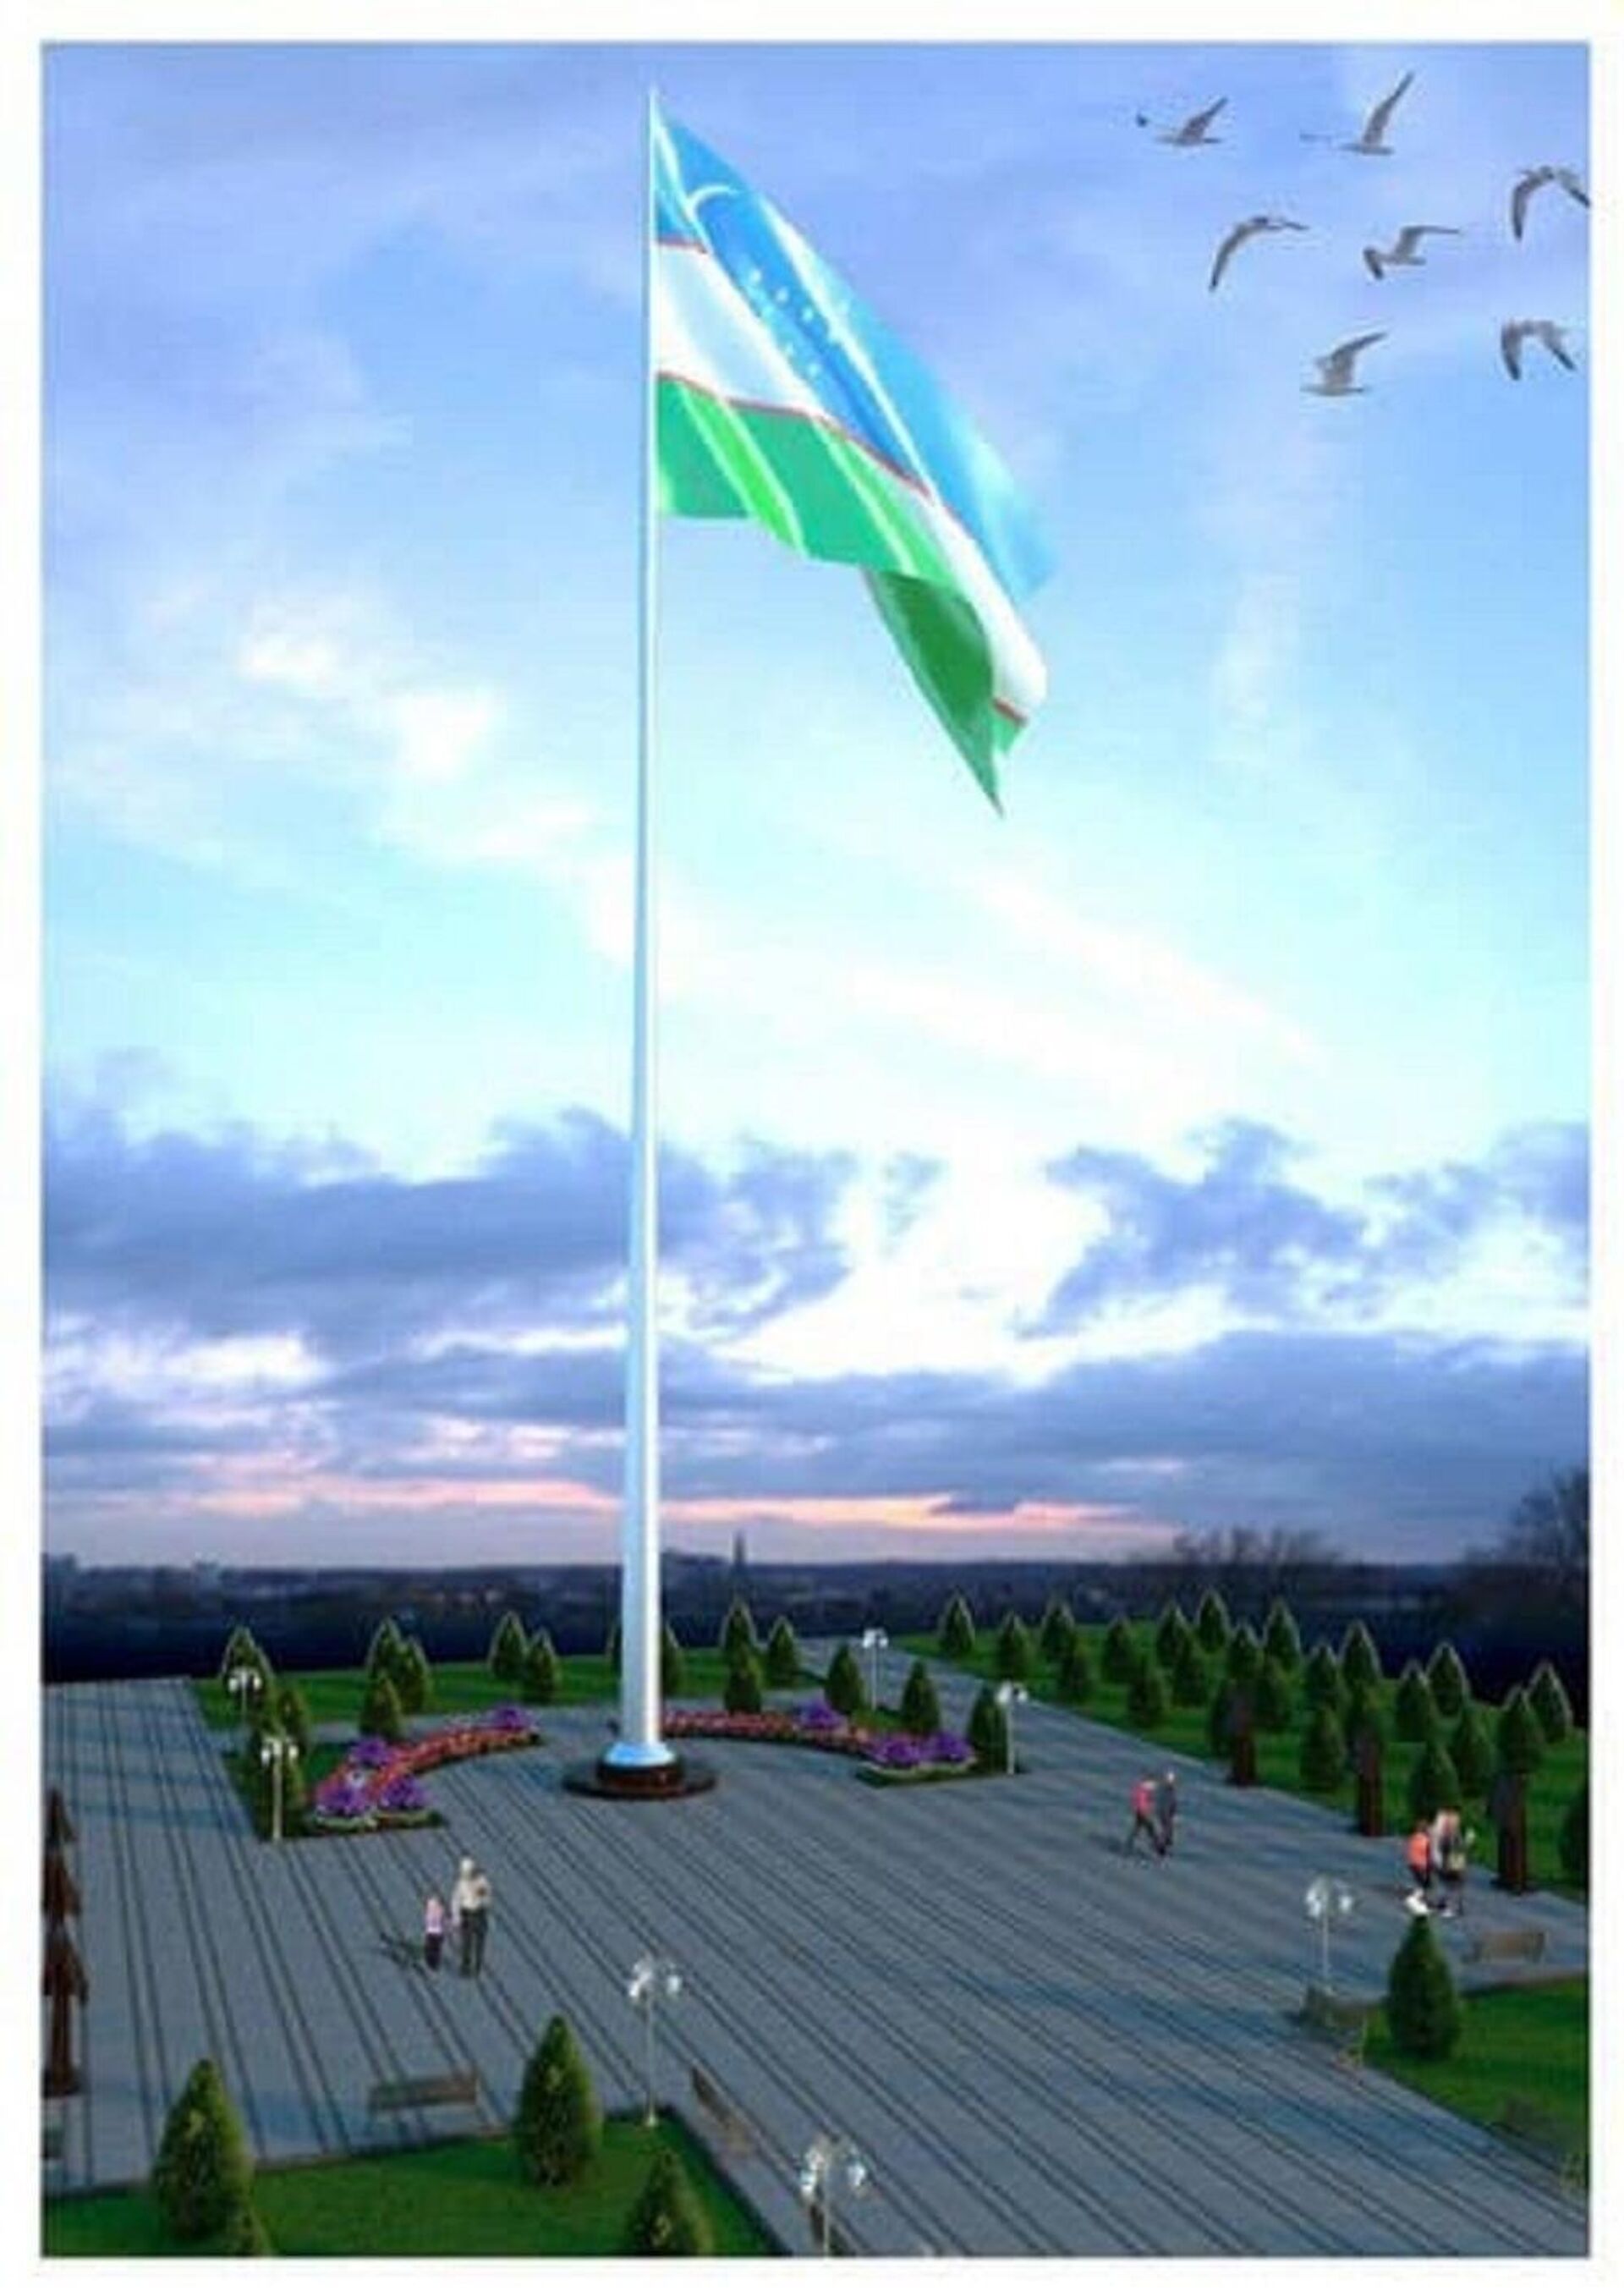 V Karshiu stanovat flag stoimostyu 1,35 mlrd sumov  - Sputnik O‘zbekiston, 1920, 29.04.2021